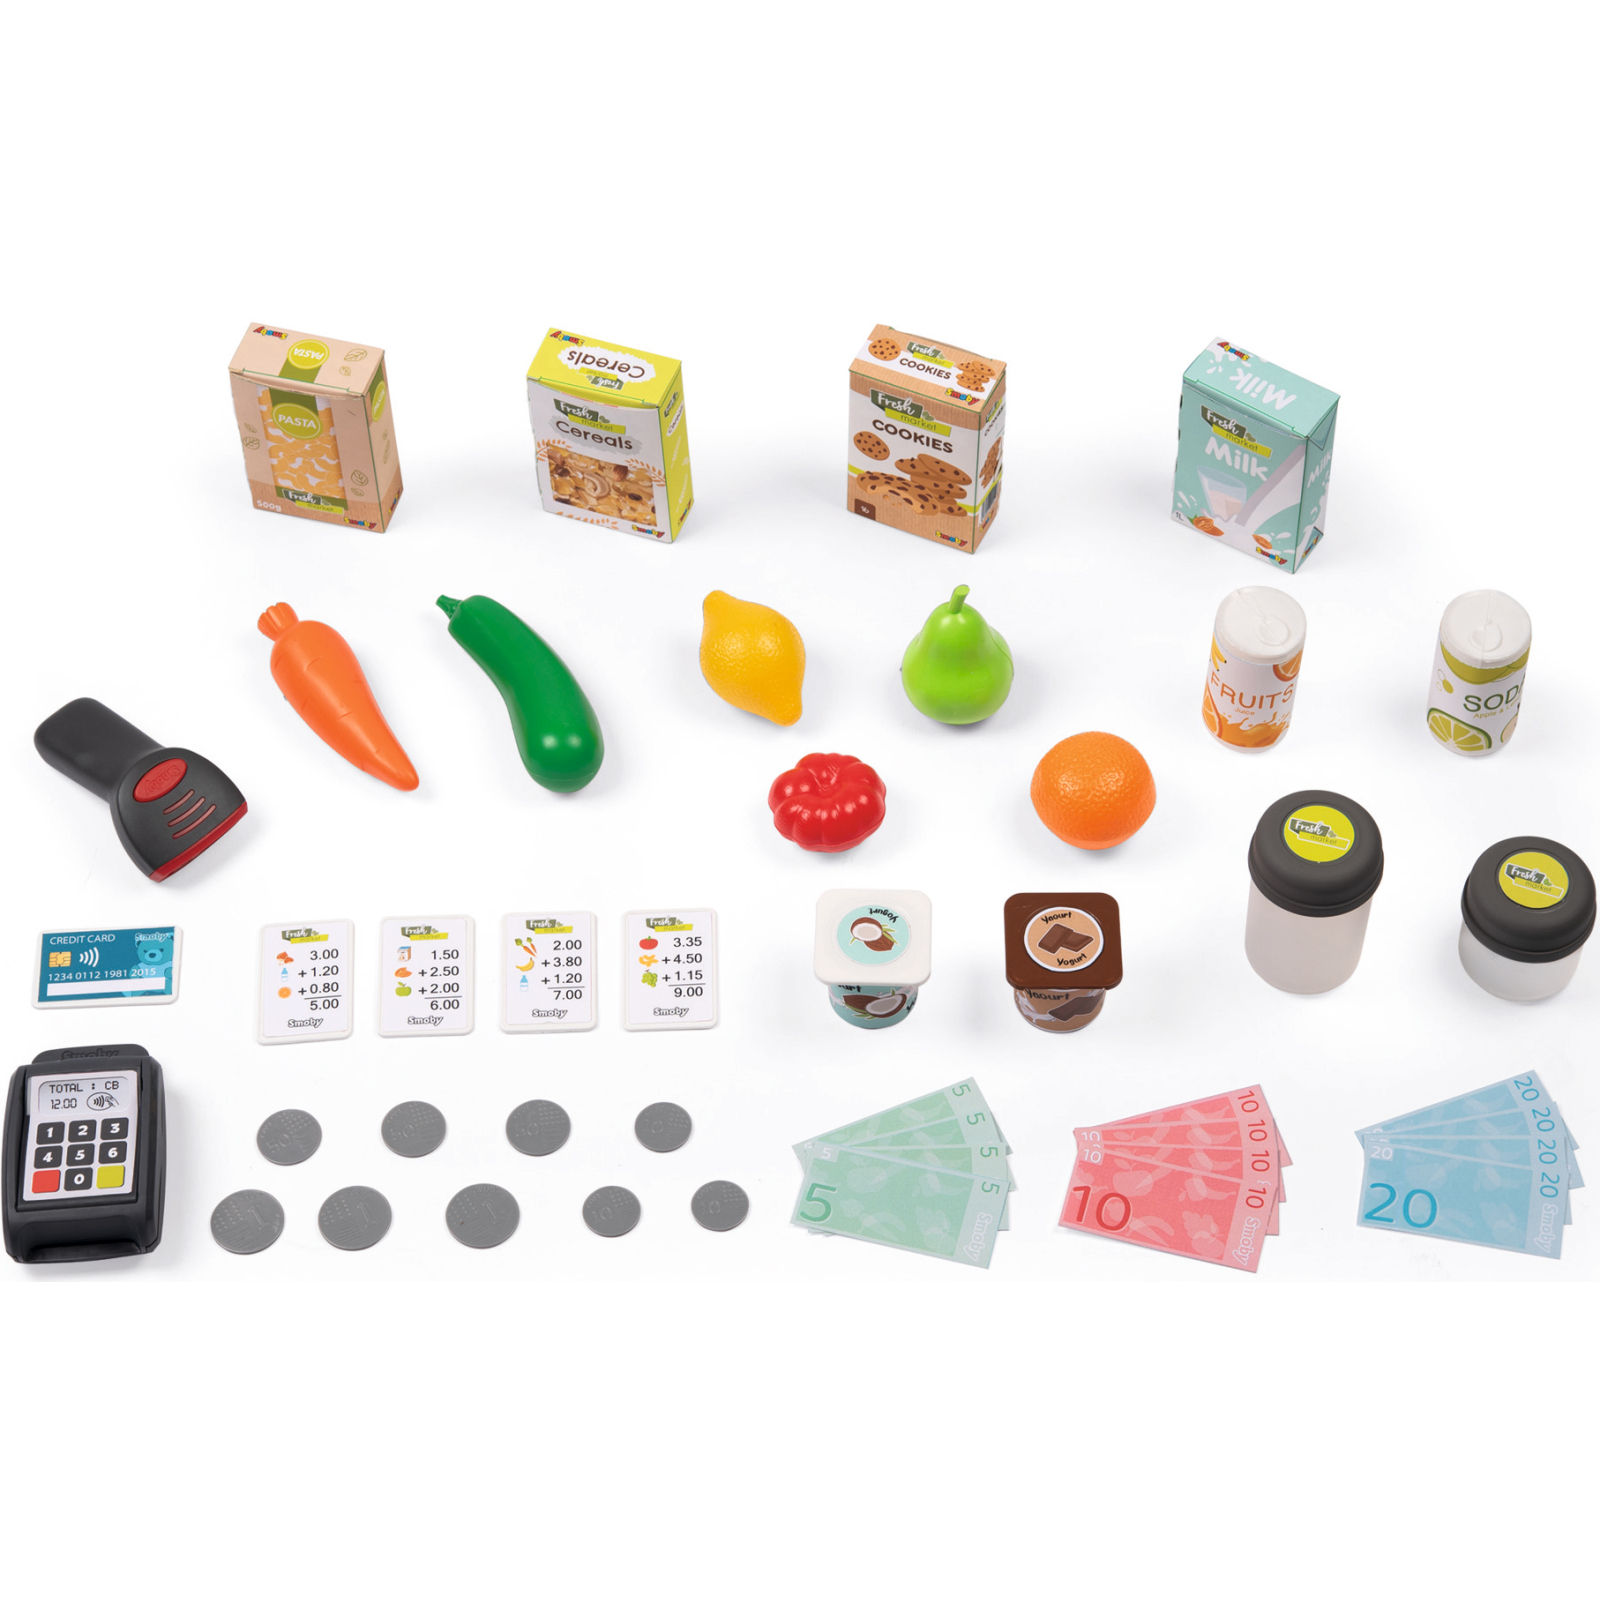 Игровой набор Smoby Интерактивный супермаркет Фреш с корзиной и сканером со световыми и звуковыми эффектами (350233) изображение 2